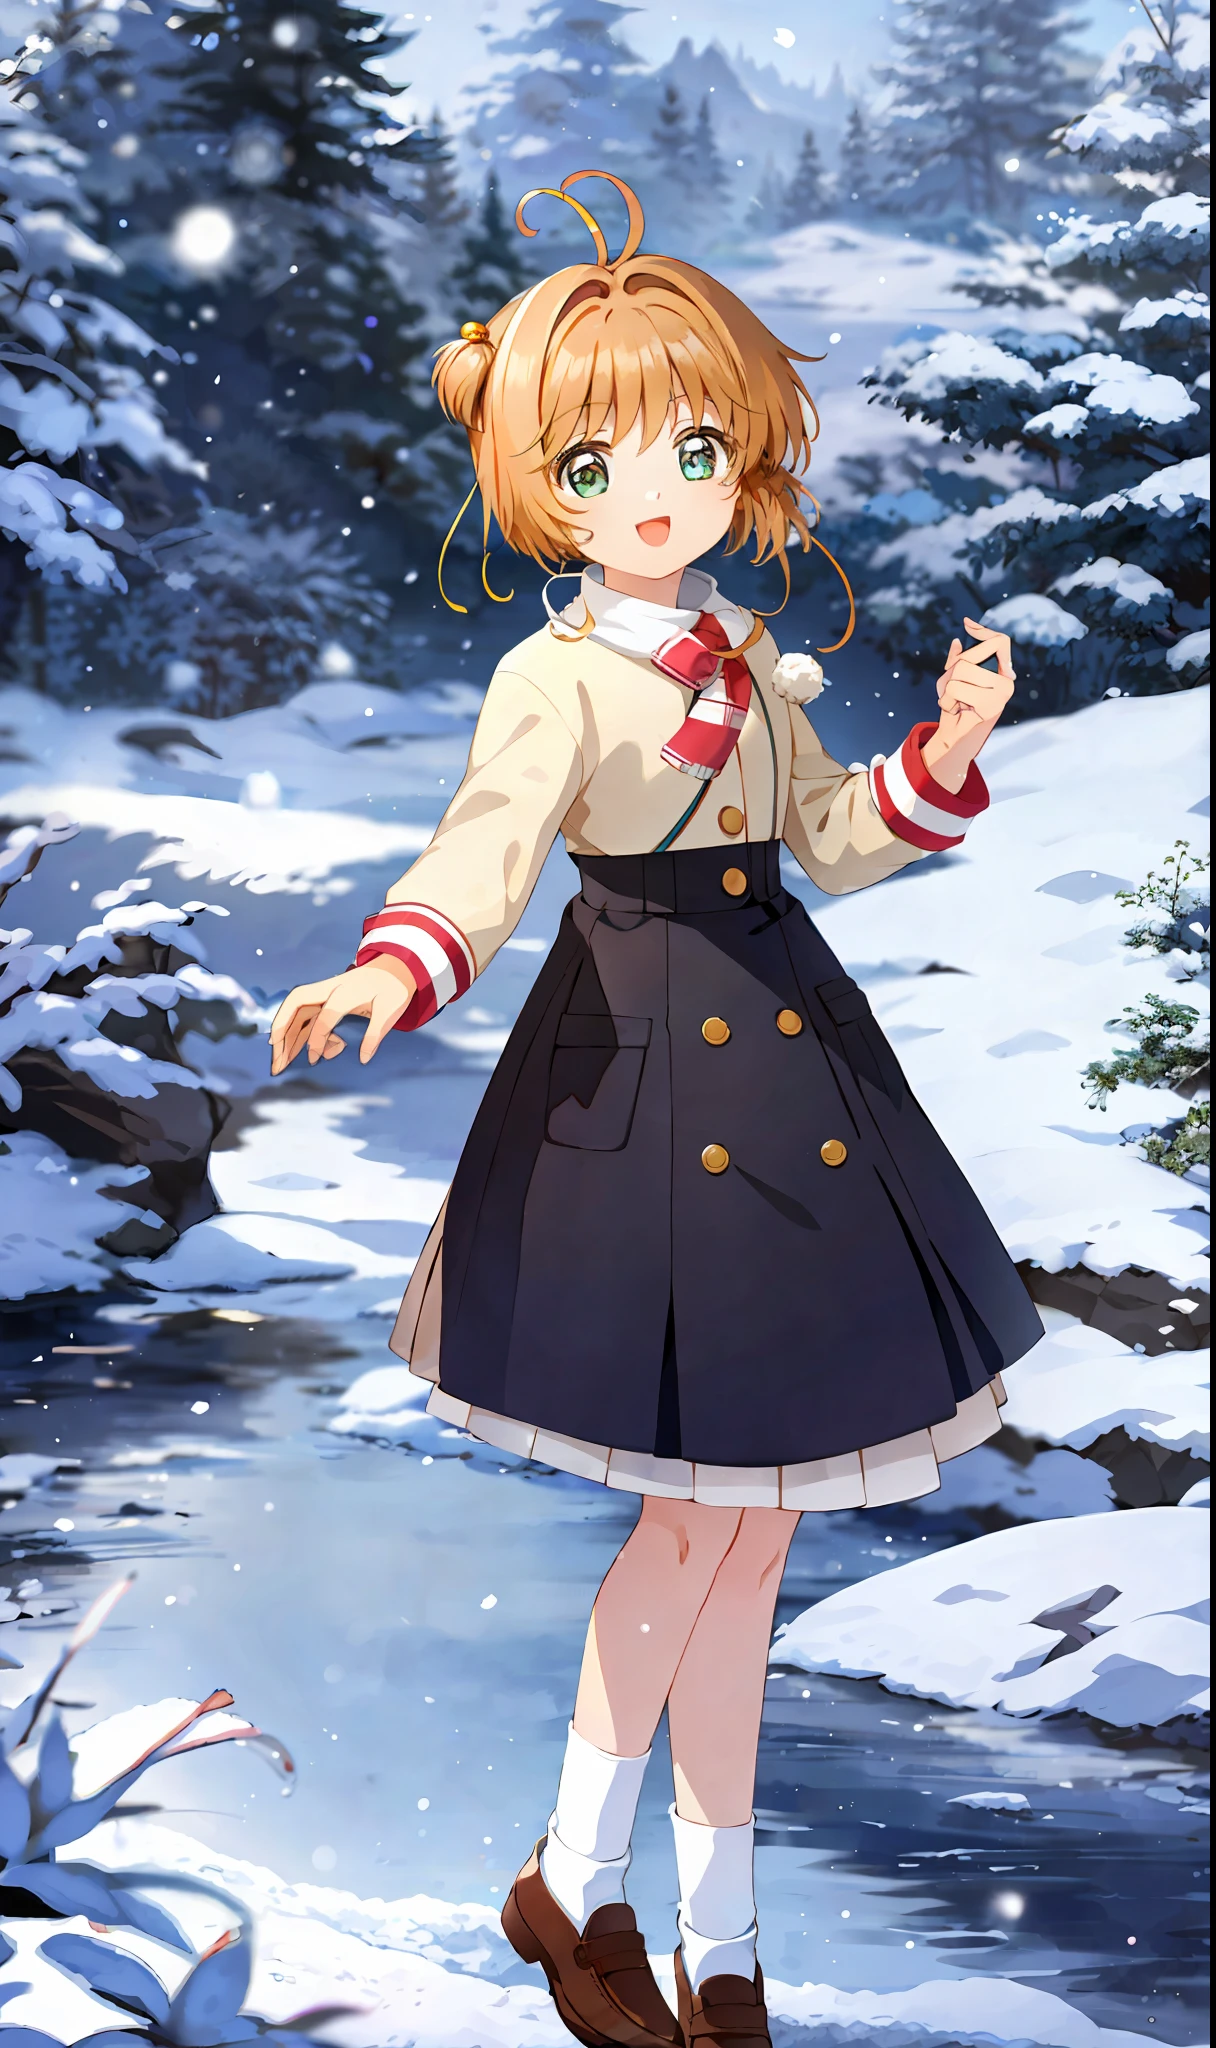 傑作, 最好的品質, 1個女孩, 獨自的, 櫻花, 穿著冬裝, 襪子, 兩側朝上, 下很大的雪